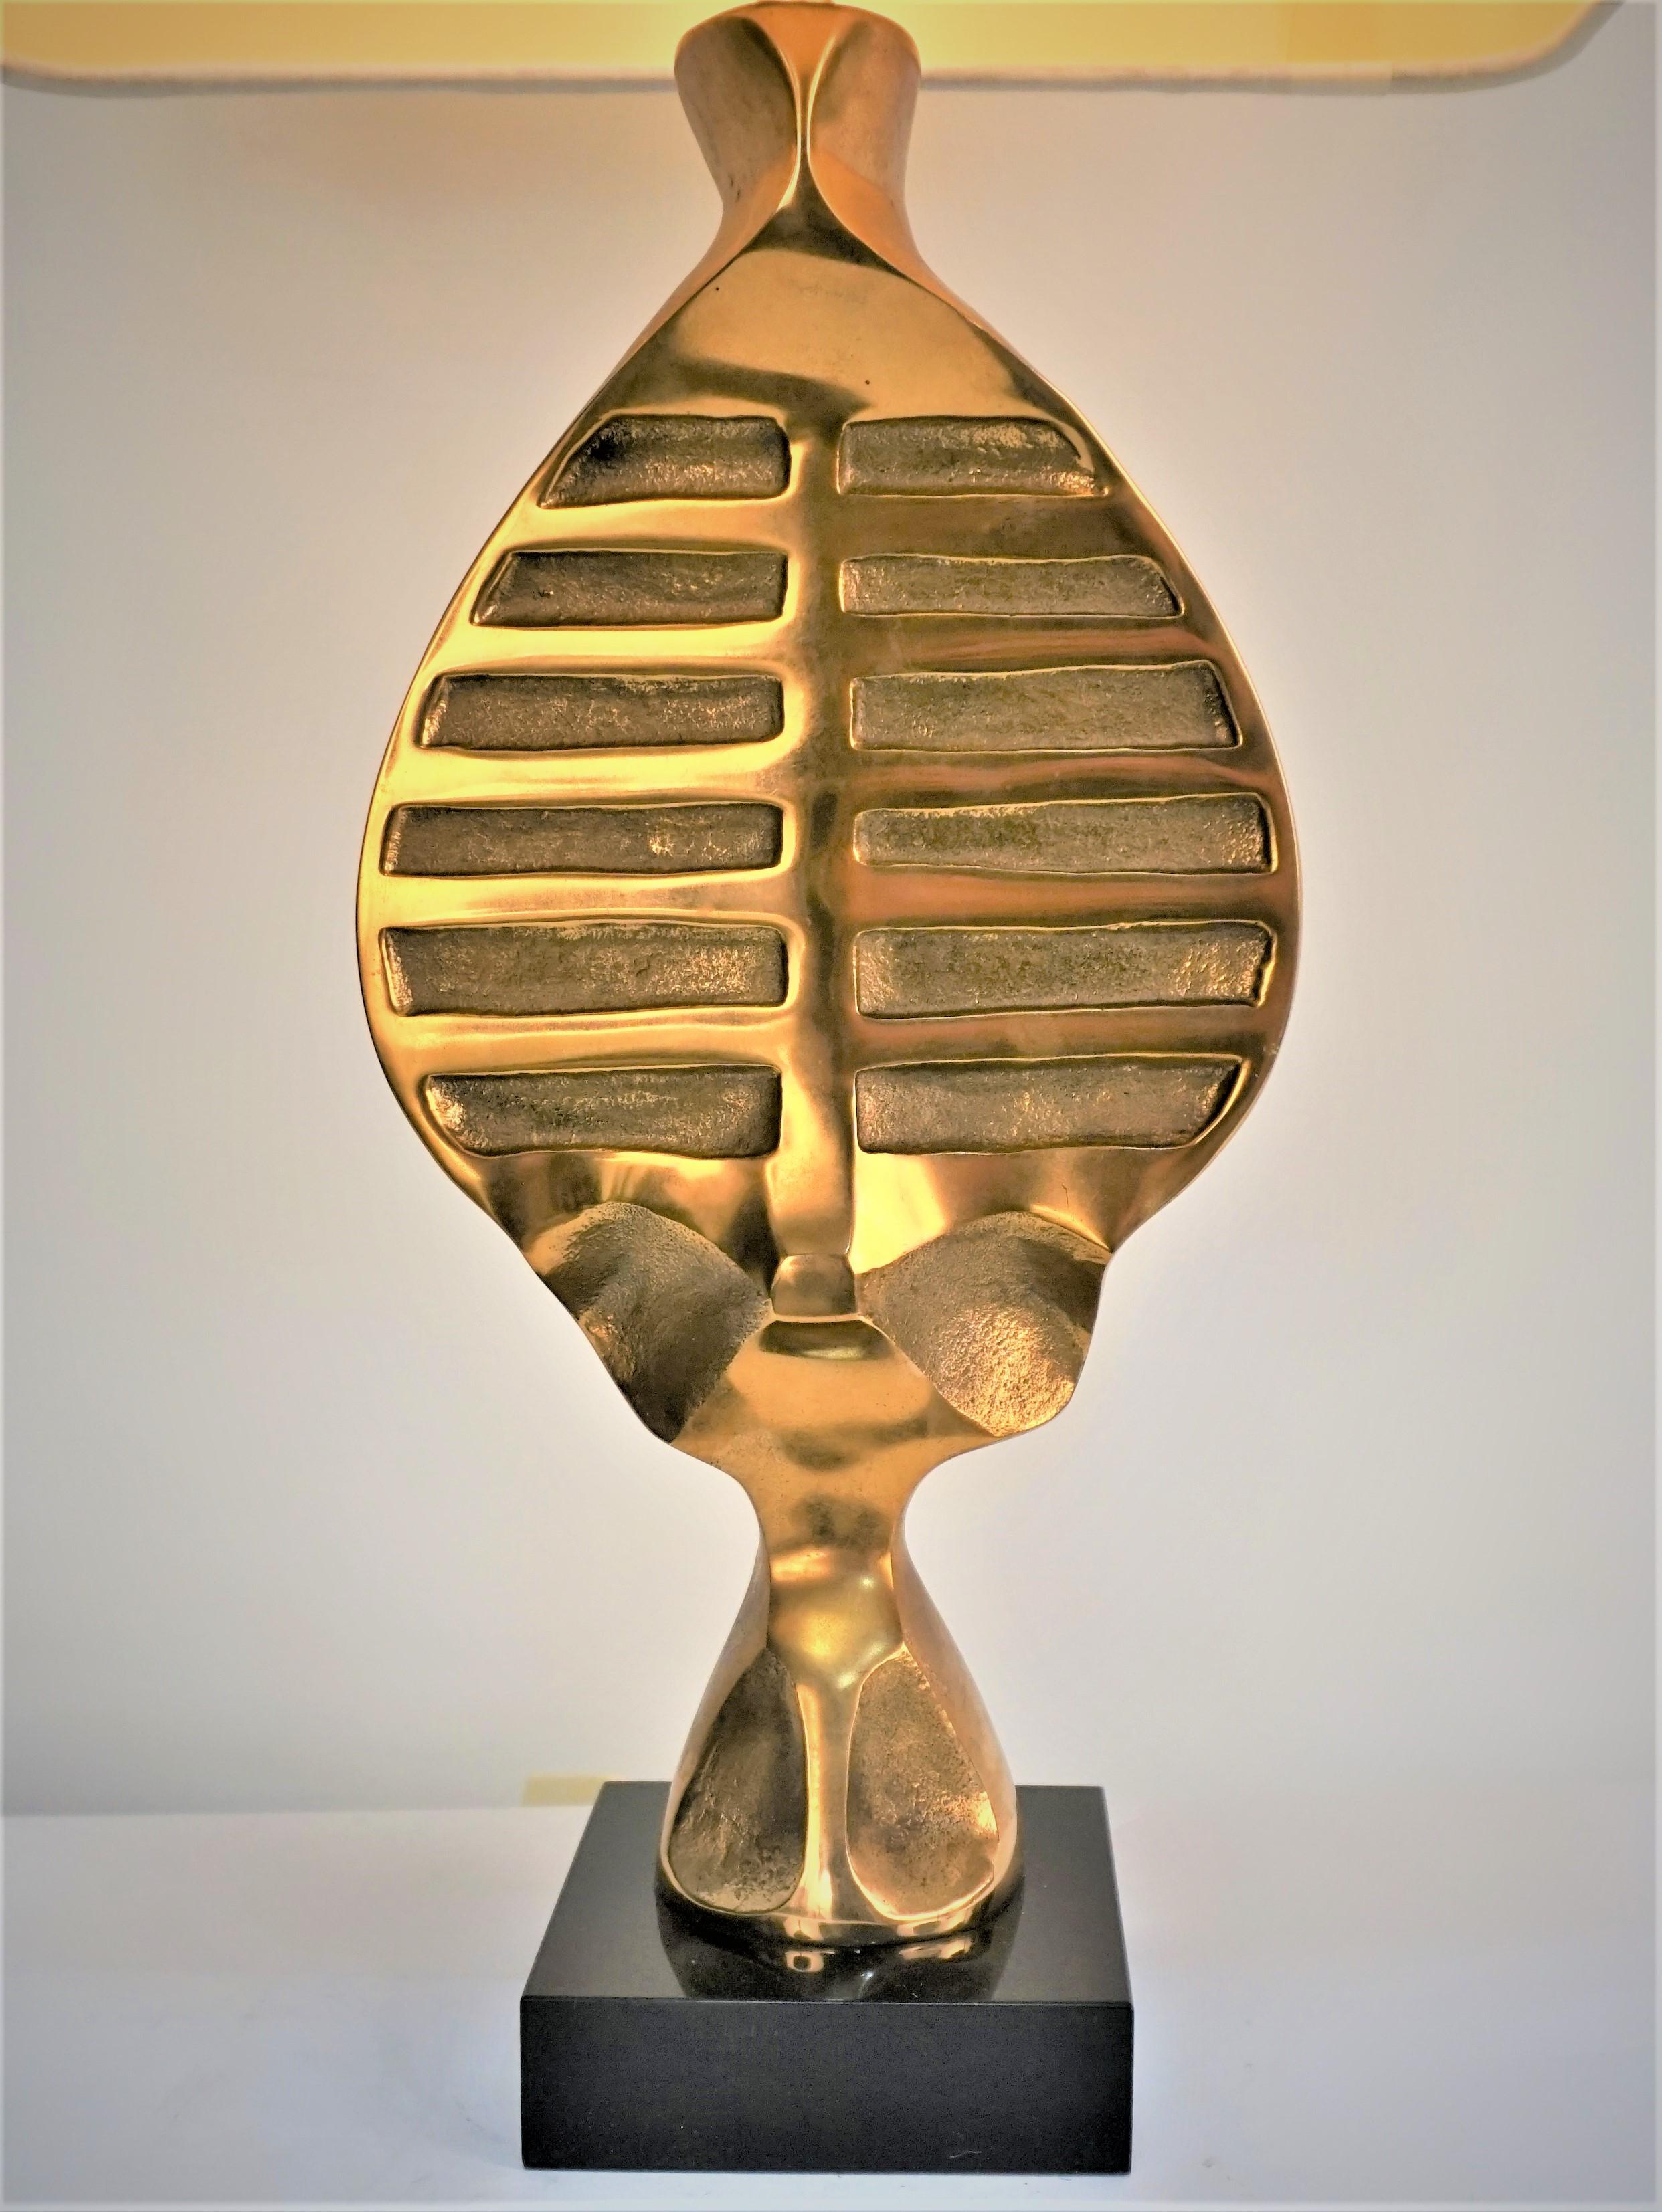 Moderne Tischleuchte aus Bronze und Lucite von Michel Jaubert.
Professionell neu verdrahtet, Seide auf Hardback-Lampenschirm.